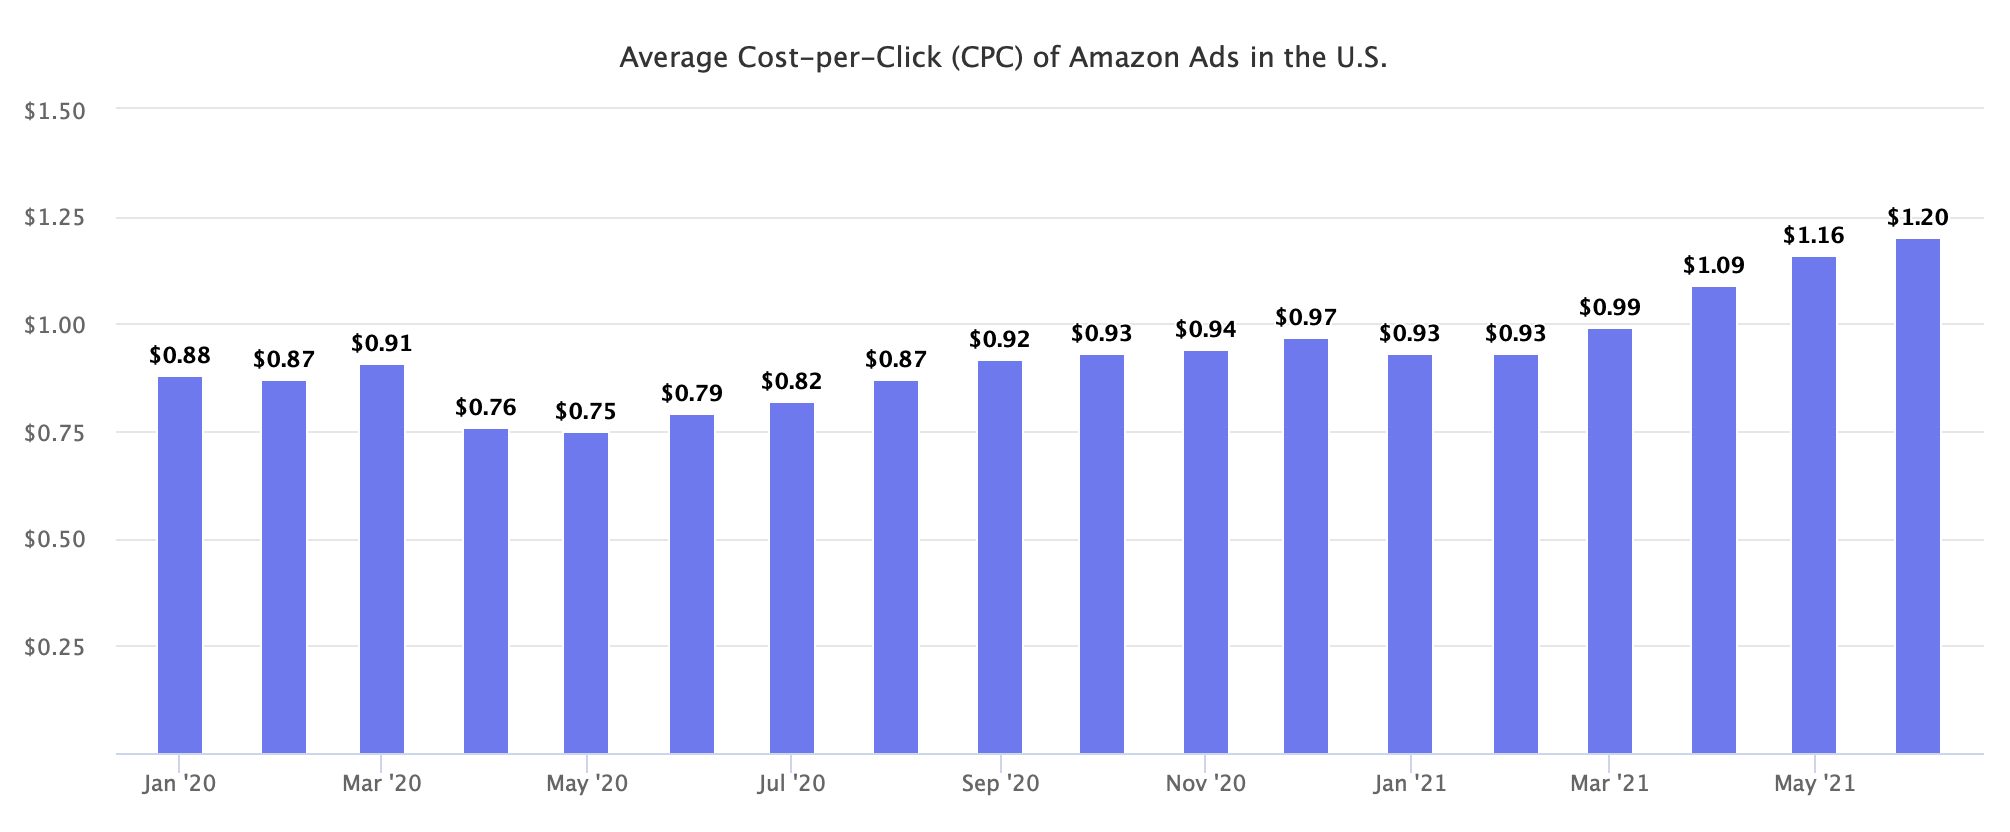 Average Cost-per-Click (CPC) of Amazon Ads in the U.S.